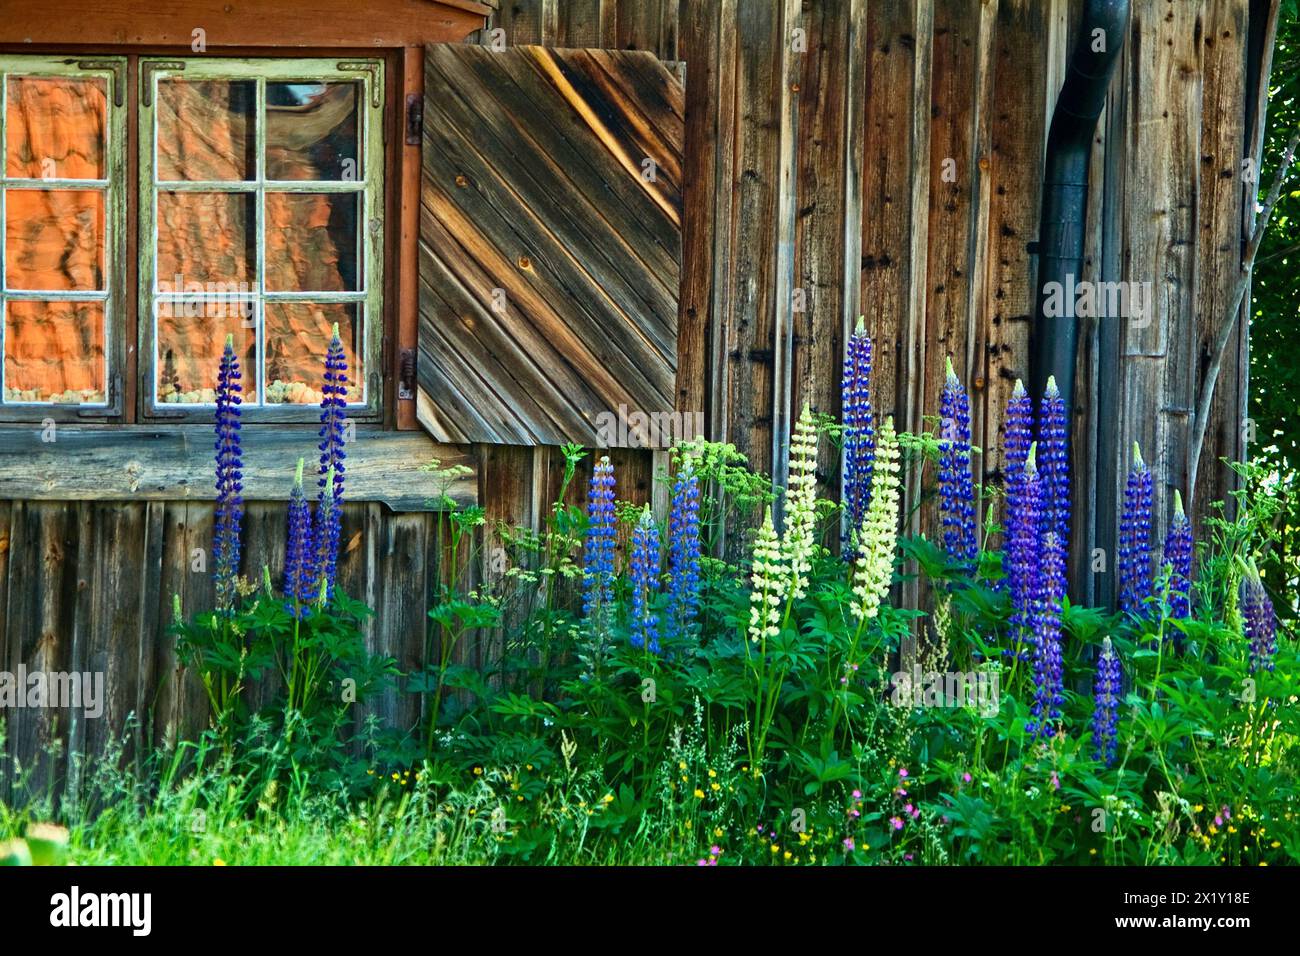 Cottage in legno con una finestra con tapparella in legno e con riflessi sul tetto nei pannelli e molti fiori di lupino in fiore in estate. Foto Stock